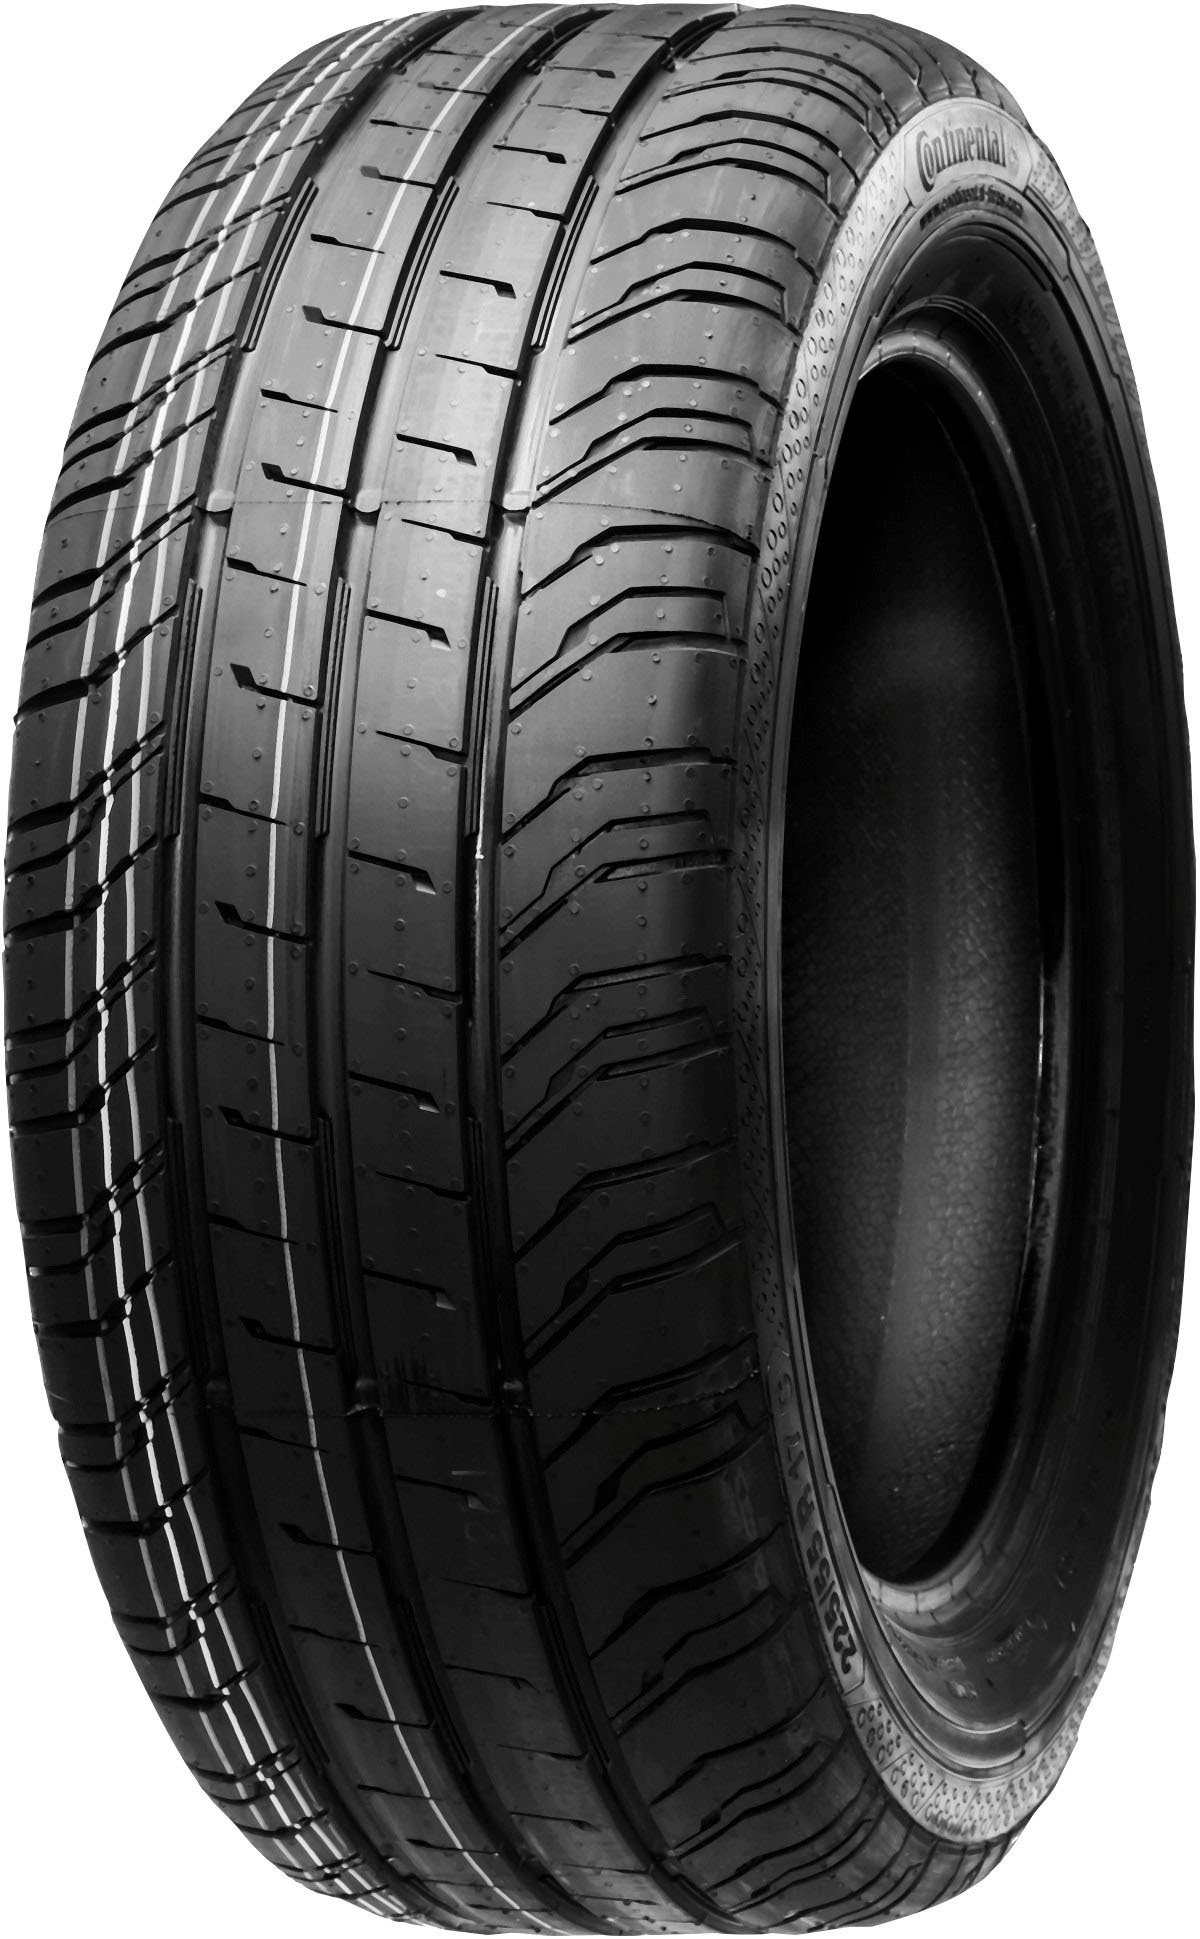 OTTO kaufen | 235/65 R16 Reifen online